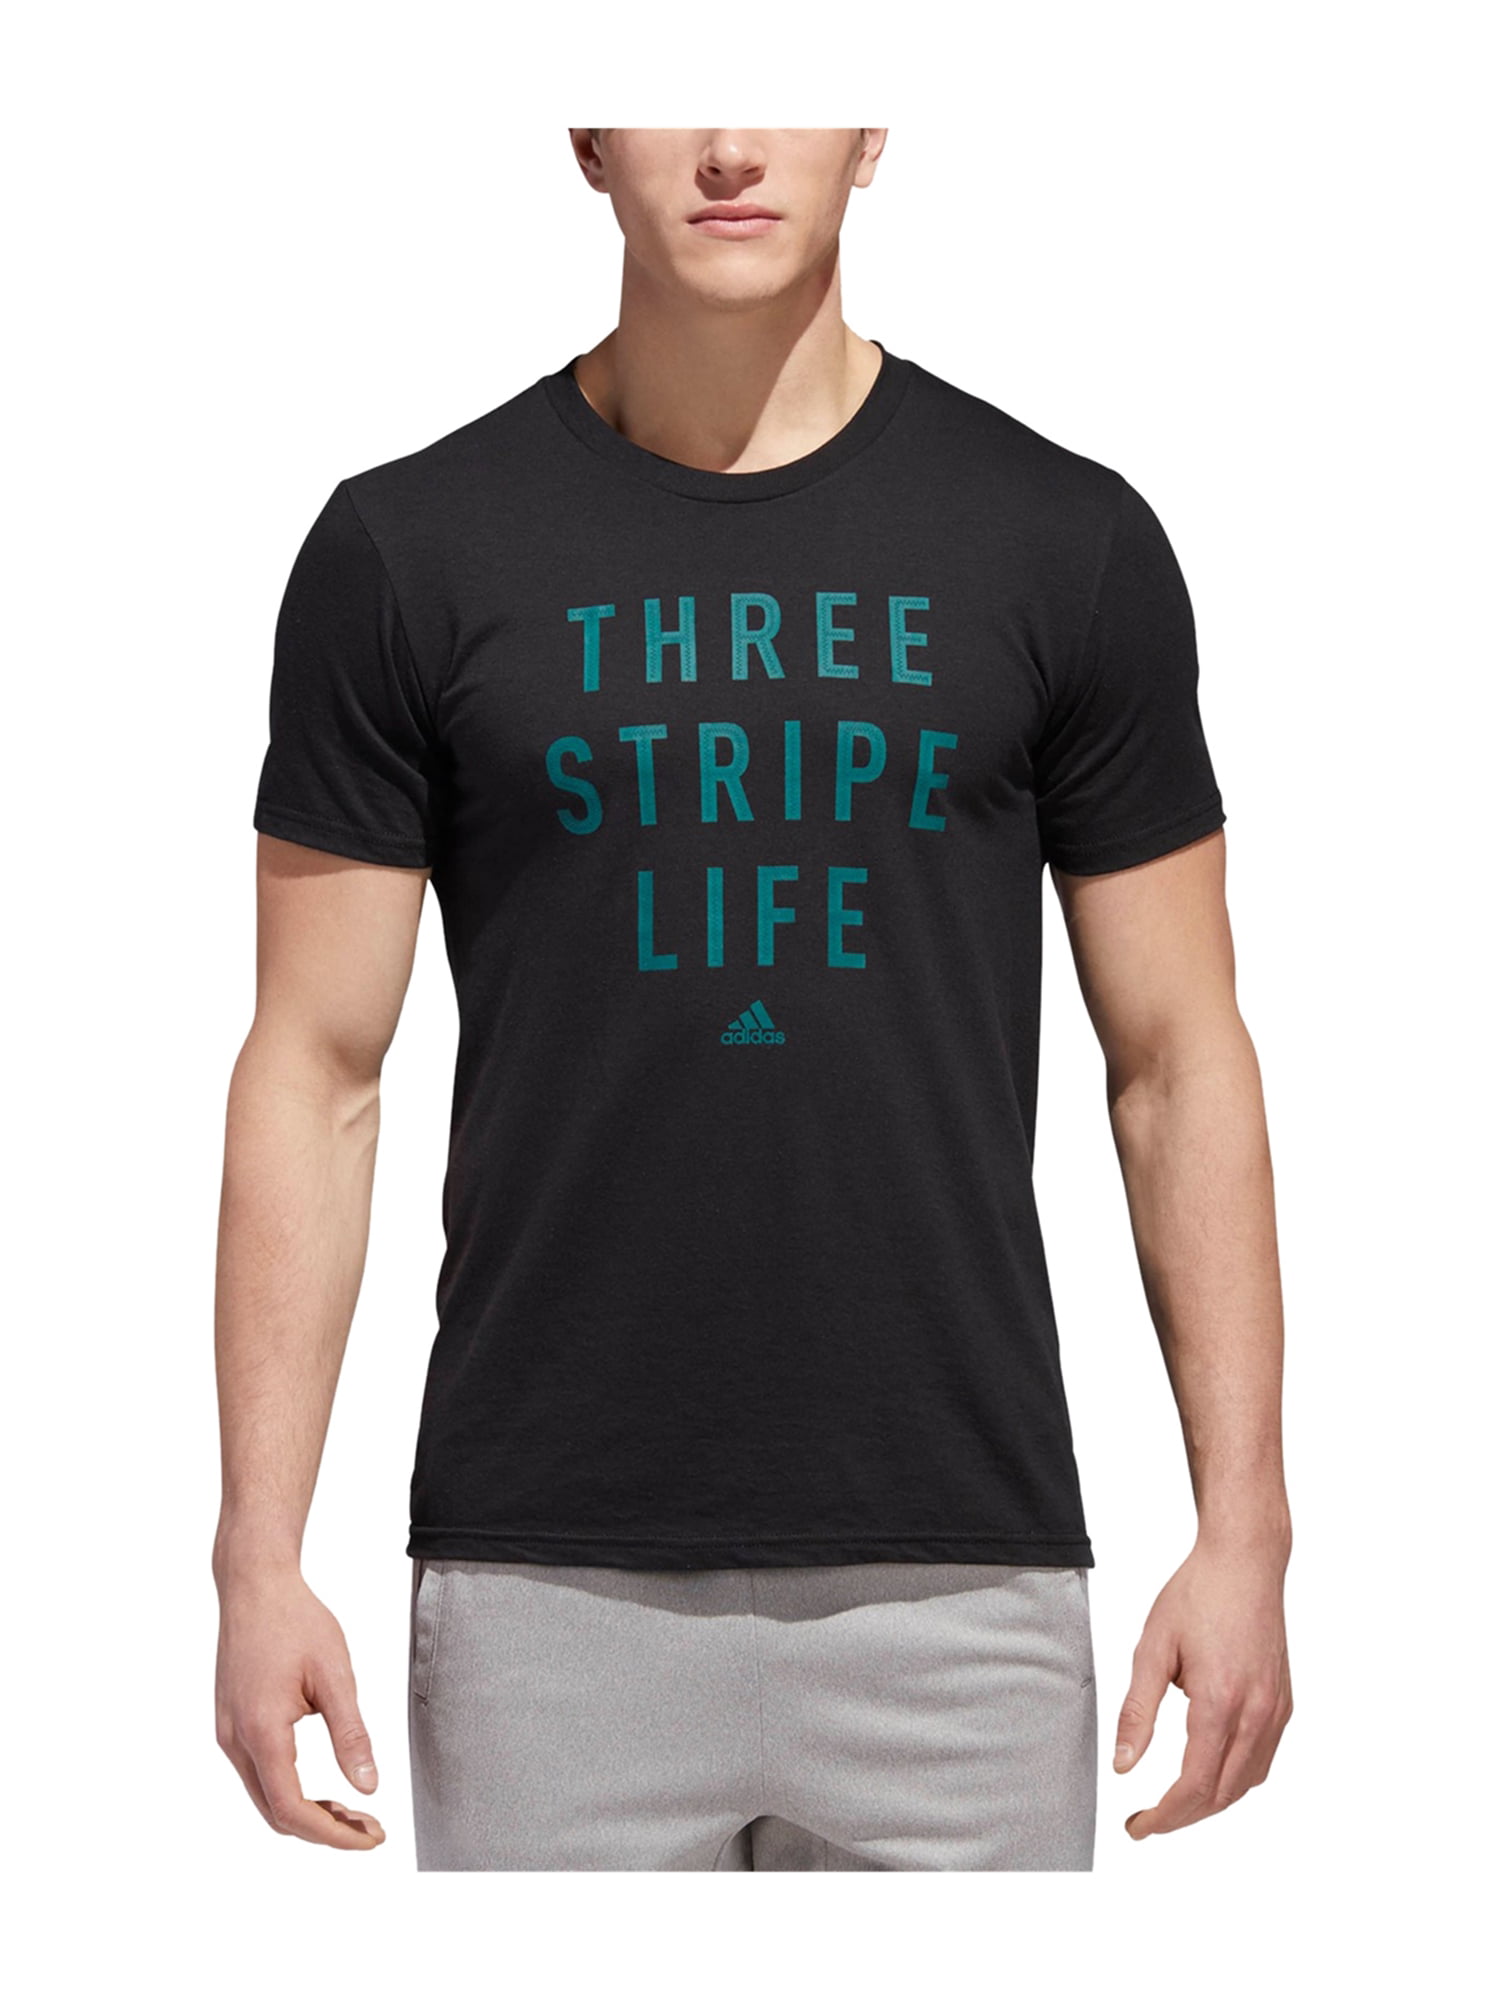 adidas three stripe life shirt